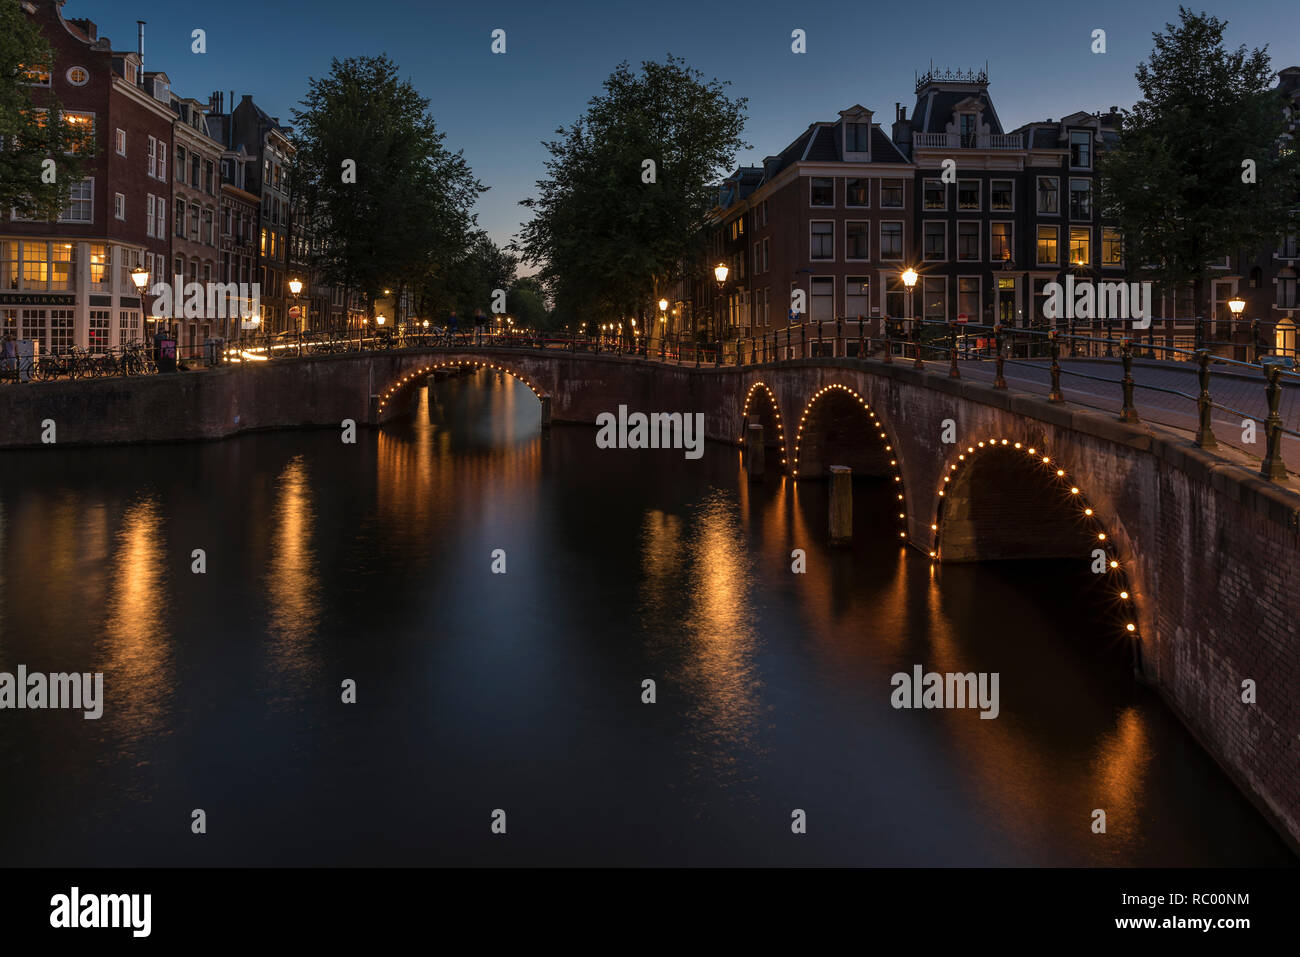 Canale di Amsterdam e il bridge al tramonto. Il canale è calma e le luci intorno i ponti arcate sono riflettendo sull'acqua liscia. Foto Stock